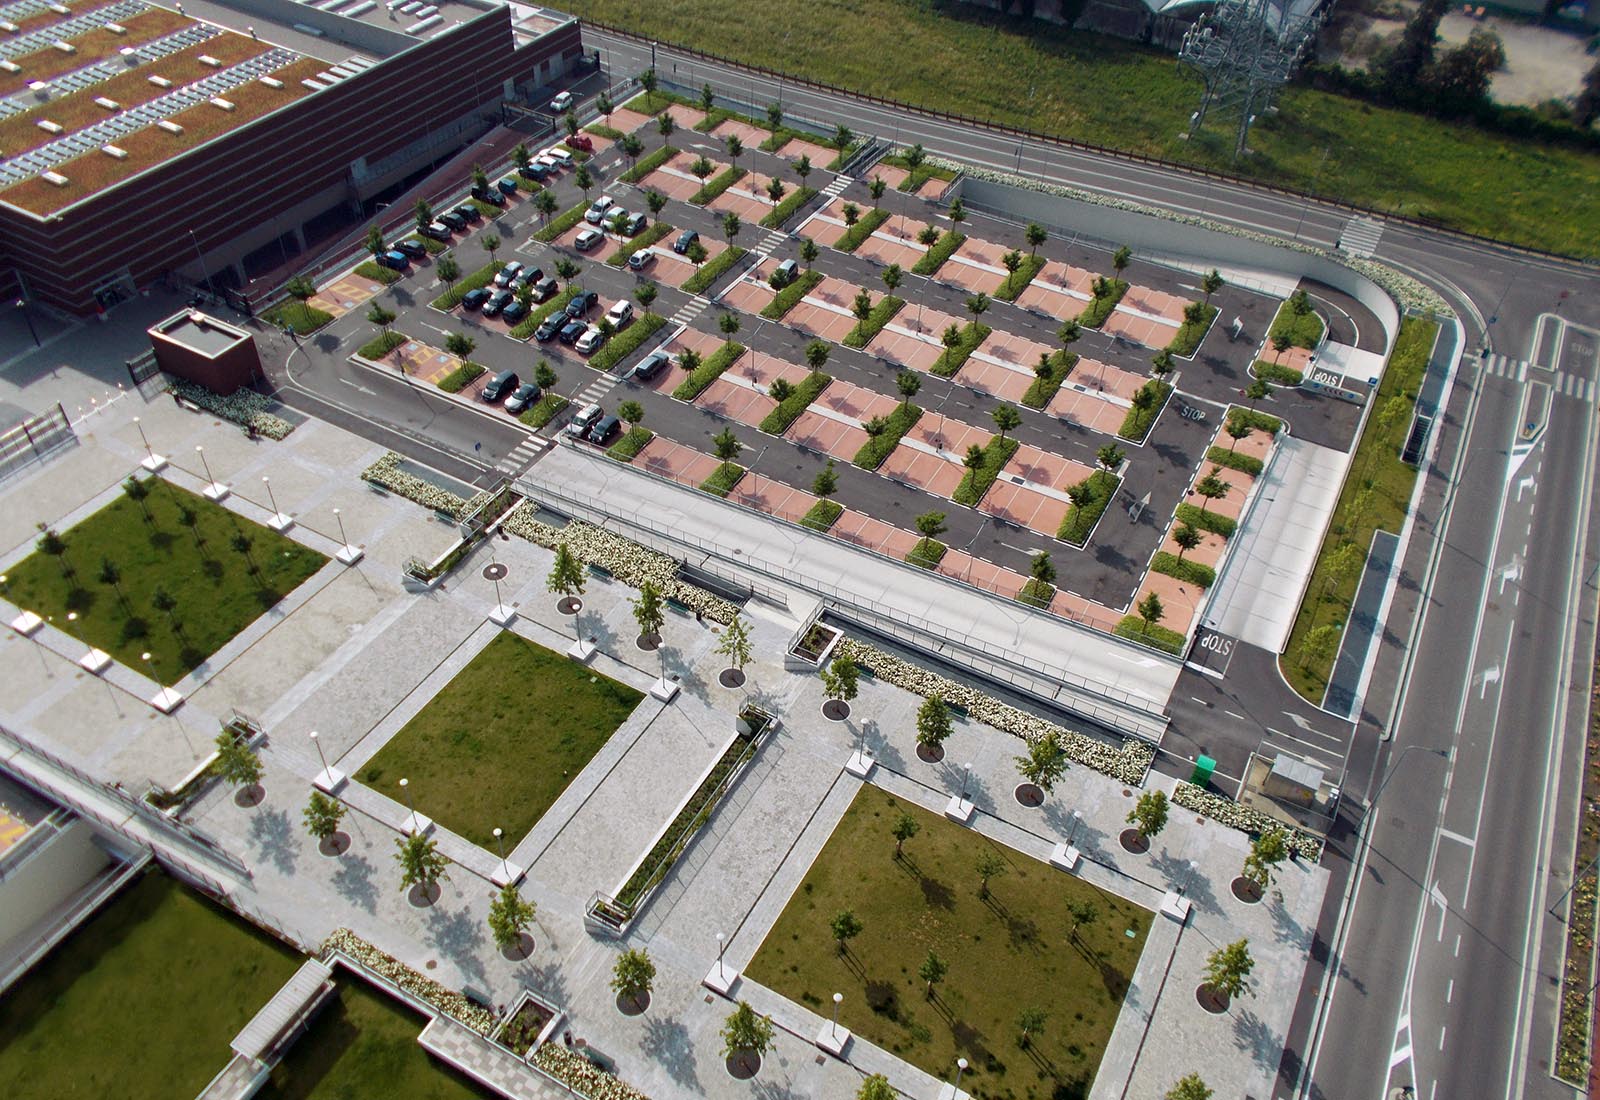 Piazza e parcheggio Adriano - La piazza e il parcheggio sud